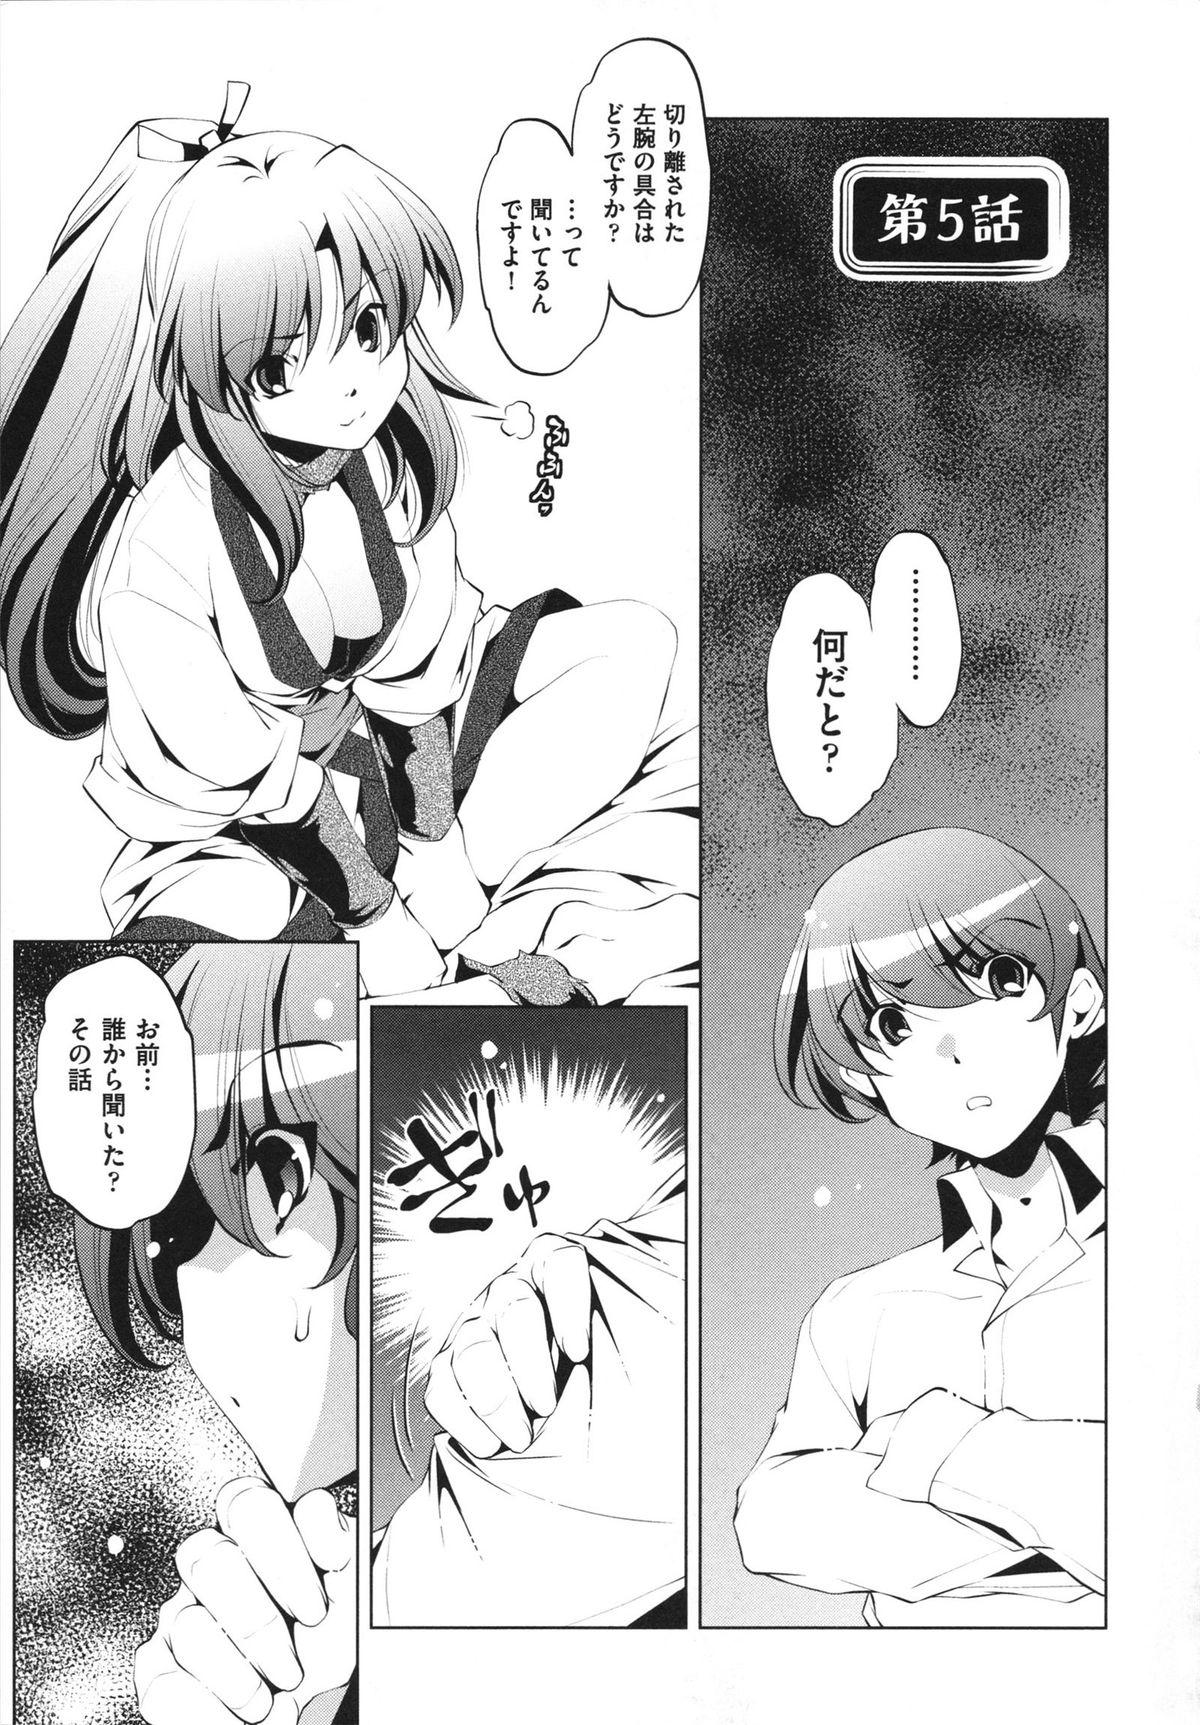 [Ootori Ryuuji] Shokushu wa Yawarakana Chibusa ni Makitsuki Onna-tachi no Ana wo Kakimidasu - Feeler coils around a soft breast and violates women's hole. 100